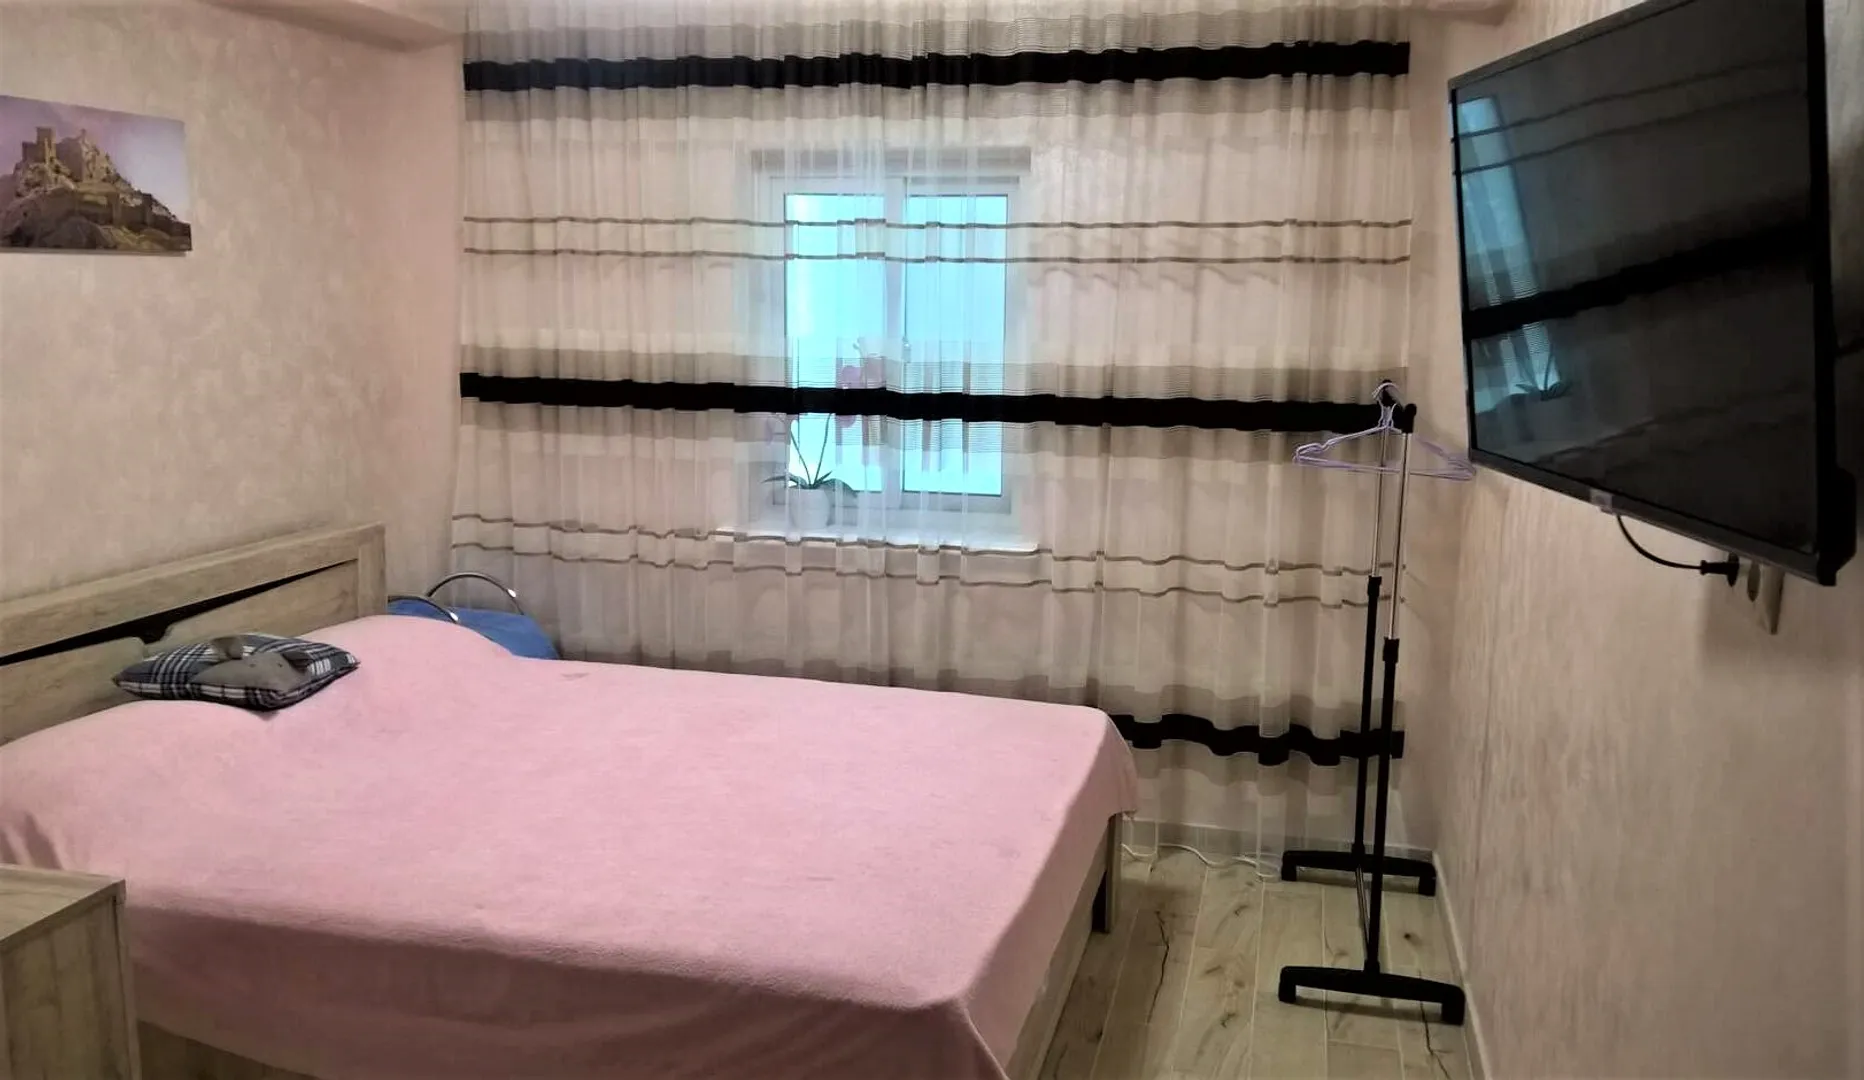 Спальная зона представлена двуспальной кроватью king-size, комодом, вешалкой для белья, тумбочкой и TV с кабельным телевидением.